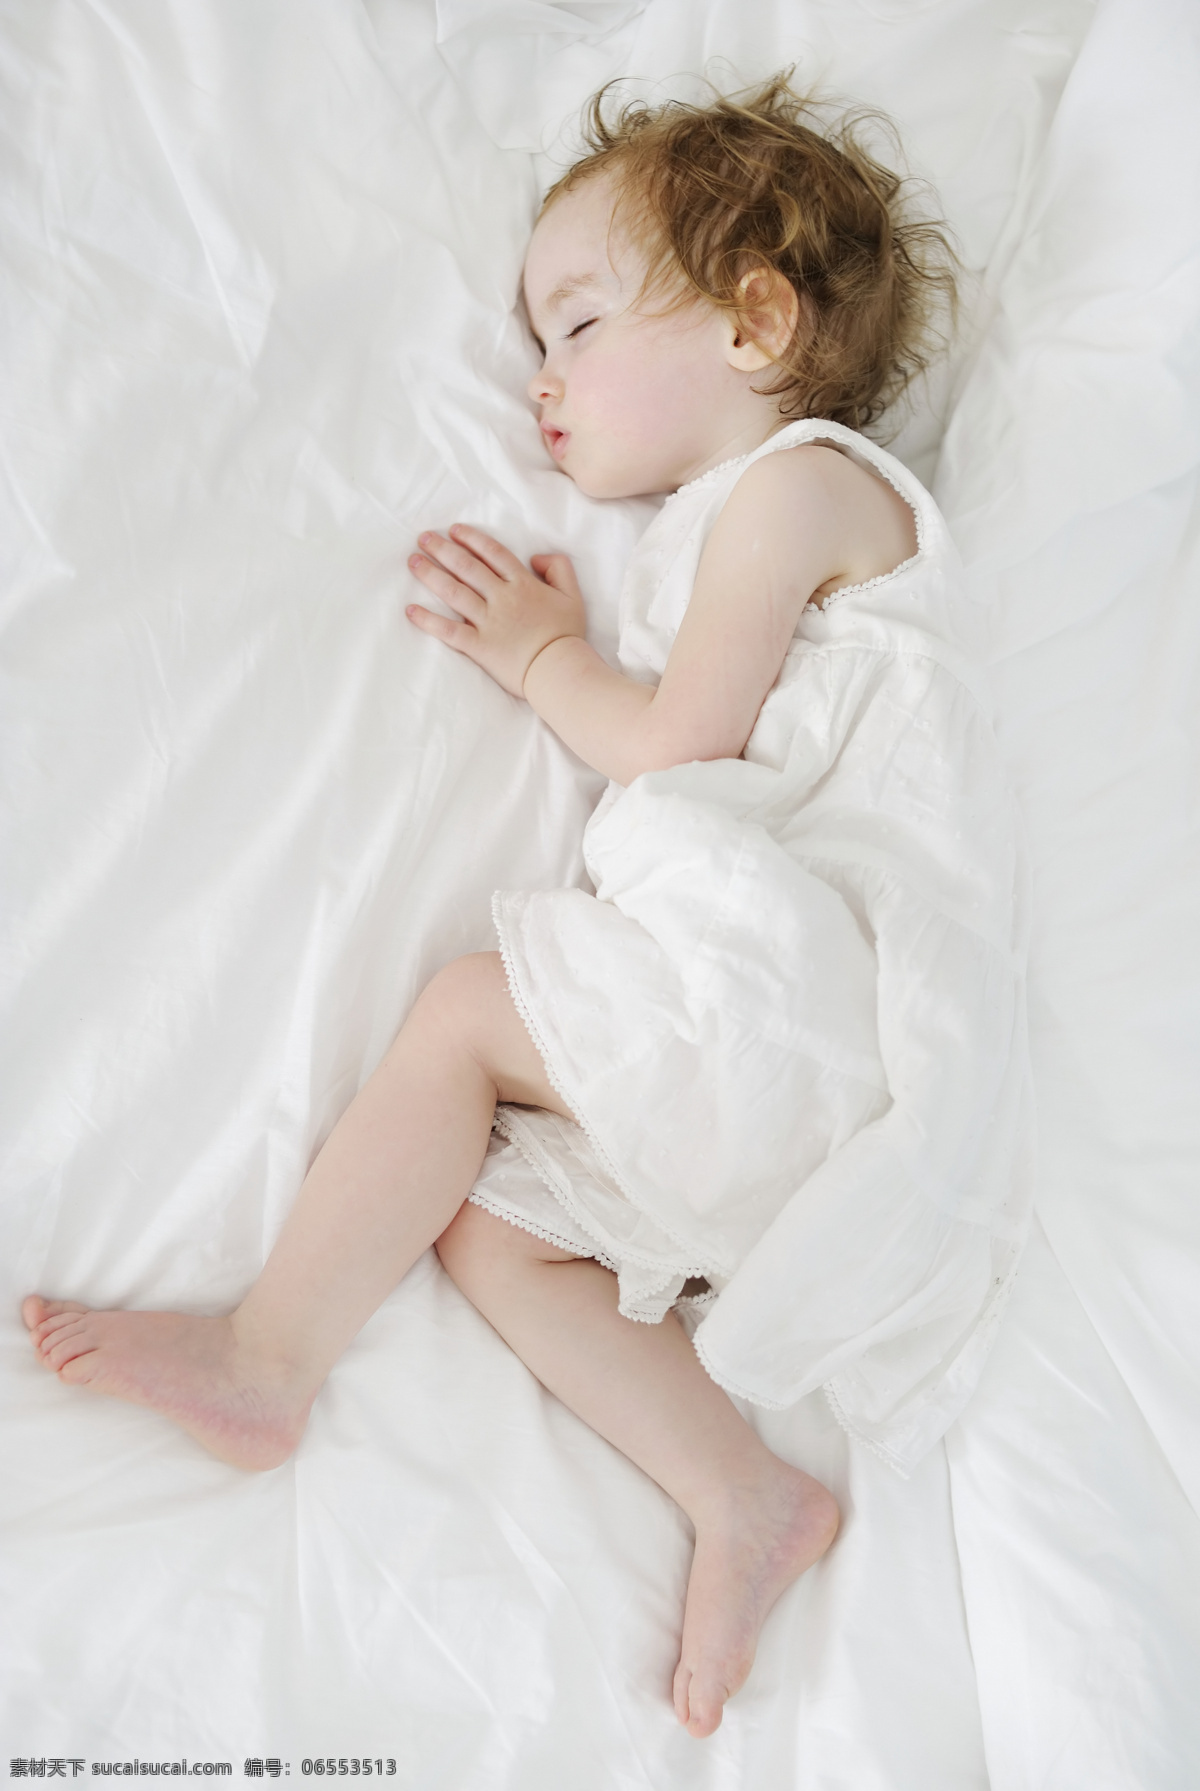 睡觉 可爱 儿童 女孩 外国女孩 裙子 金发 天真 躺着 躺在床上 床 抱着玩具 玩具 摄影图 儿童图片 人物图片